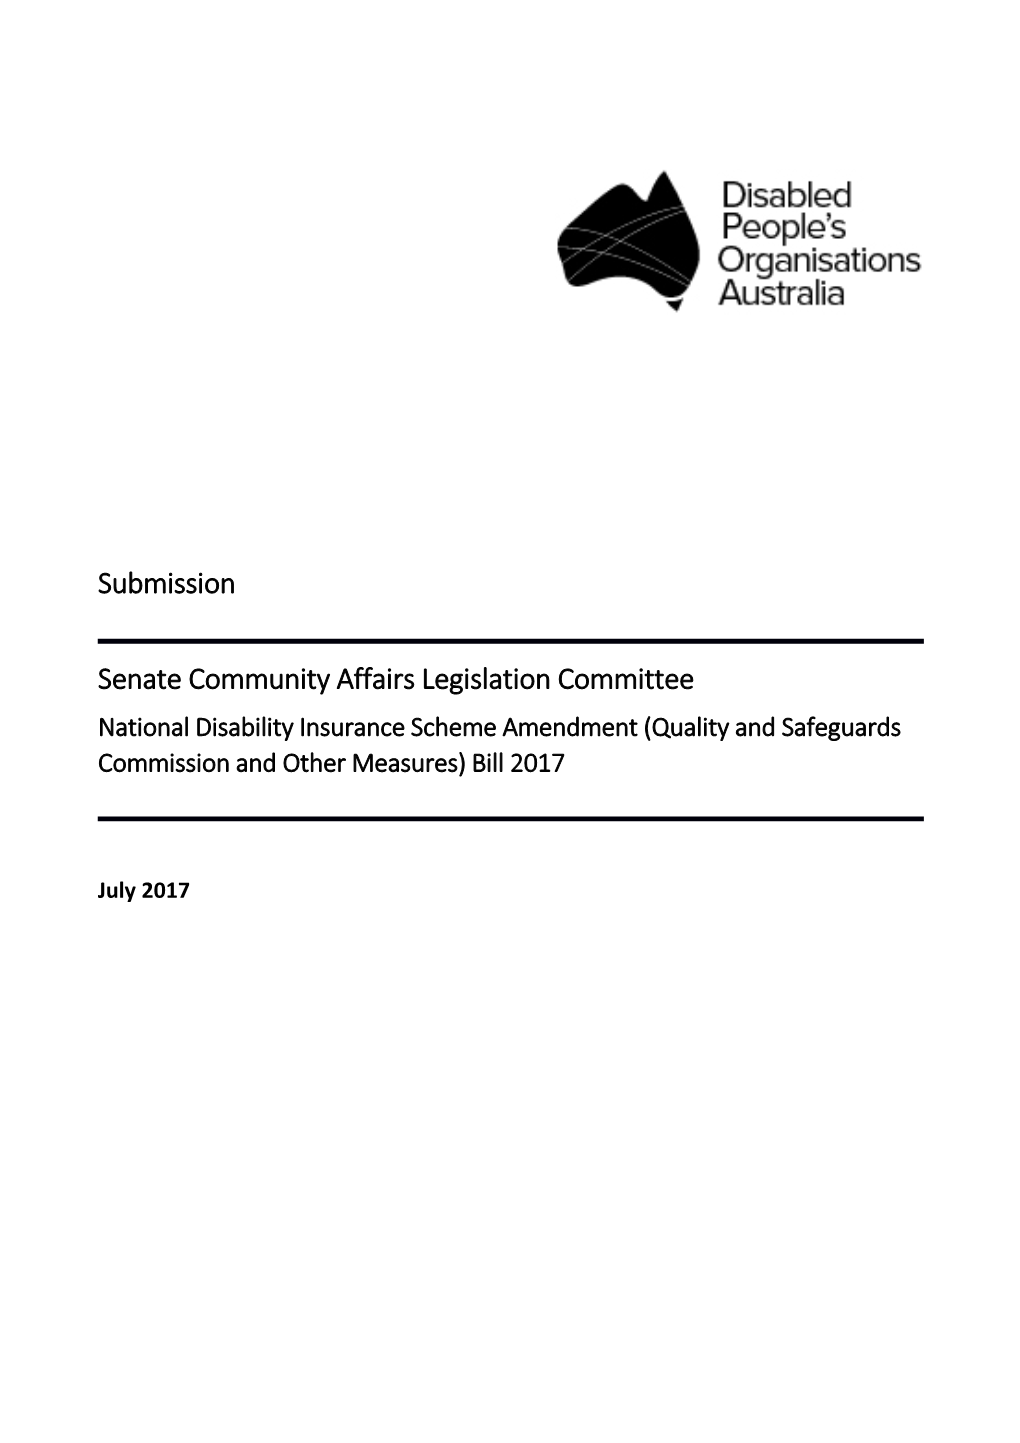 Senate Community Affairs Legislation Committee